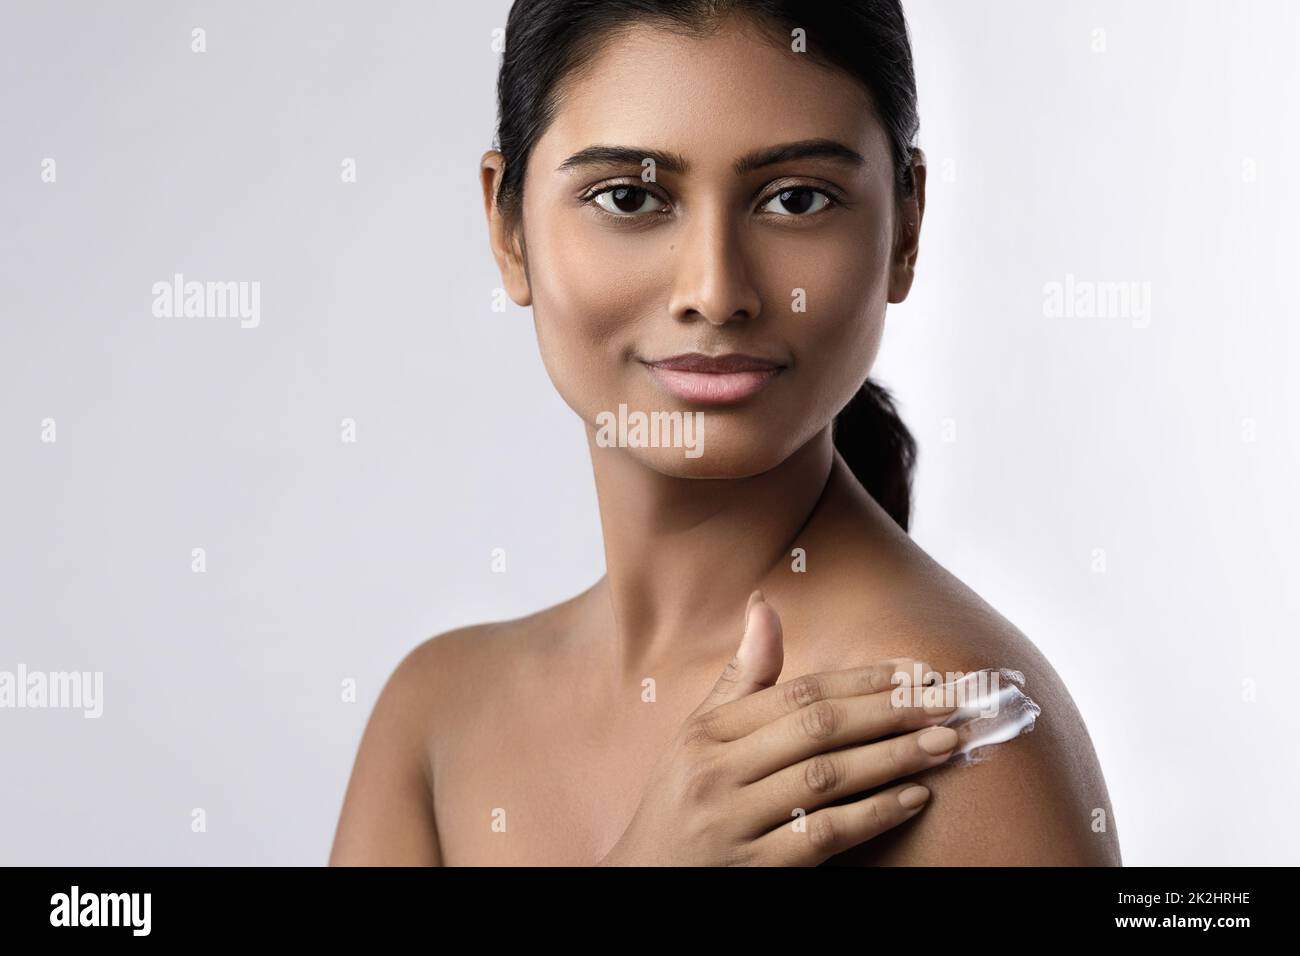 Belle femme indienne appliquant de la crème hydratante ou crème solaire sur son corps Banque D'Images